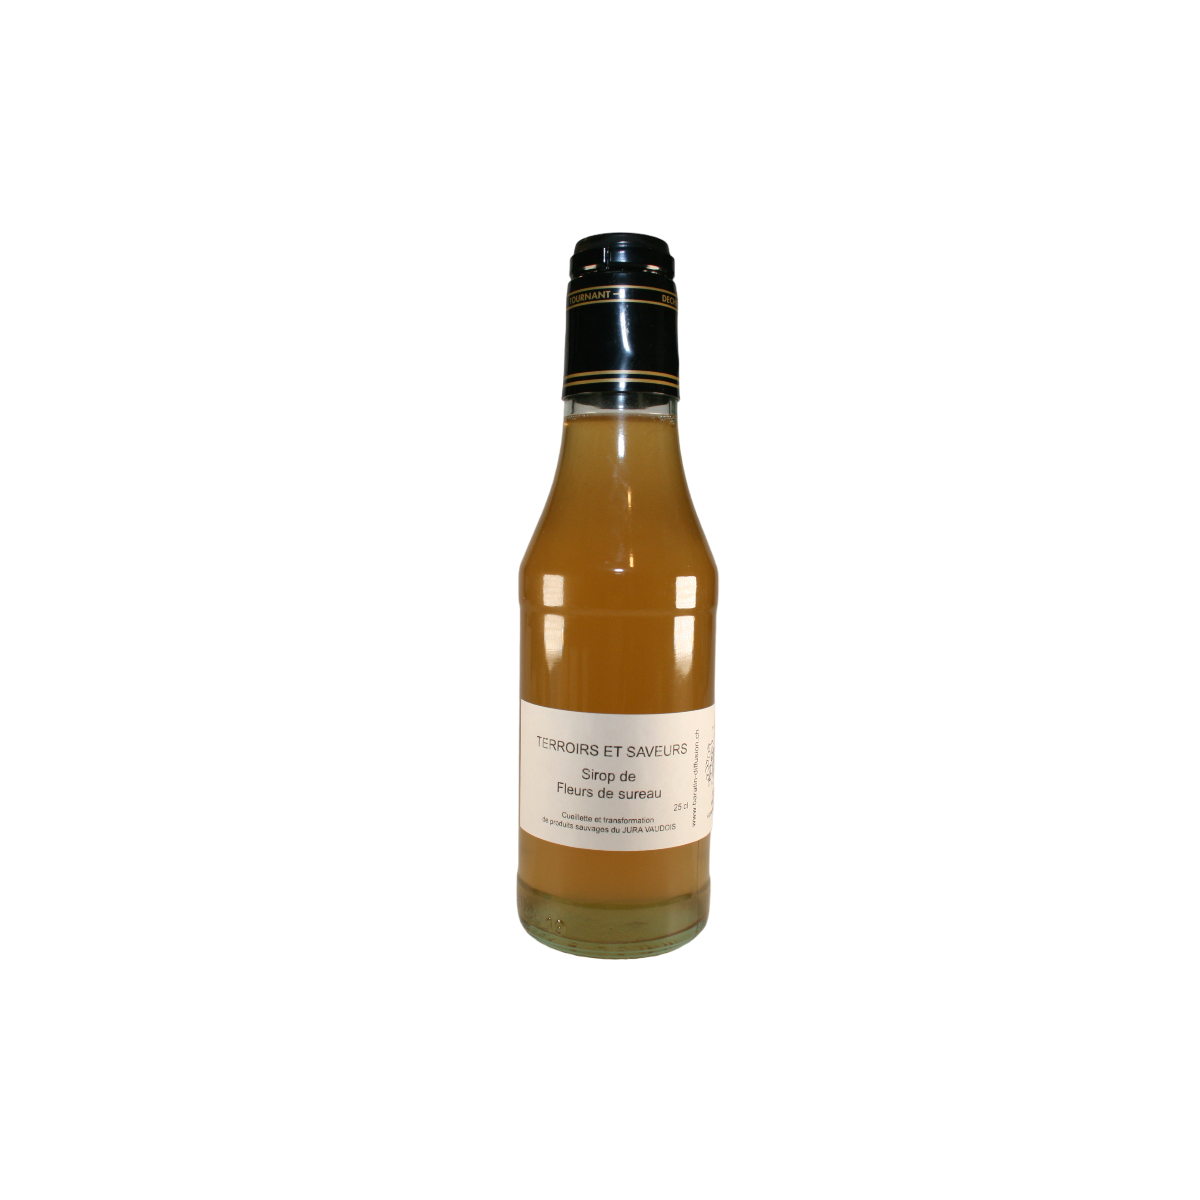 Artisanal Elderflower Syrup from the Jura Vaudois